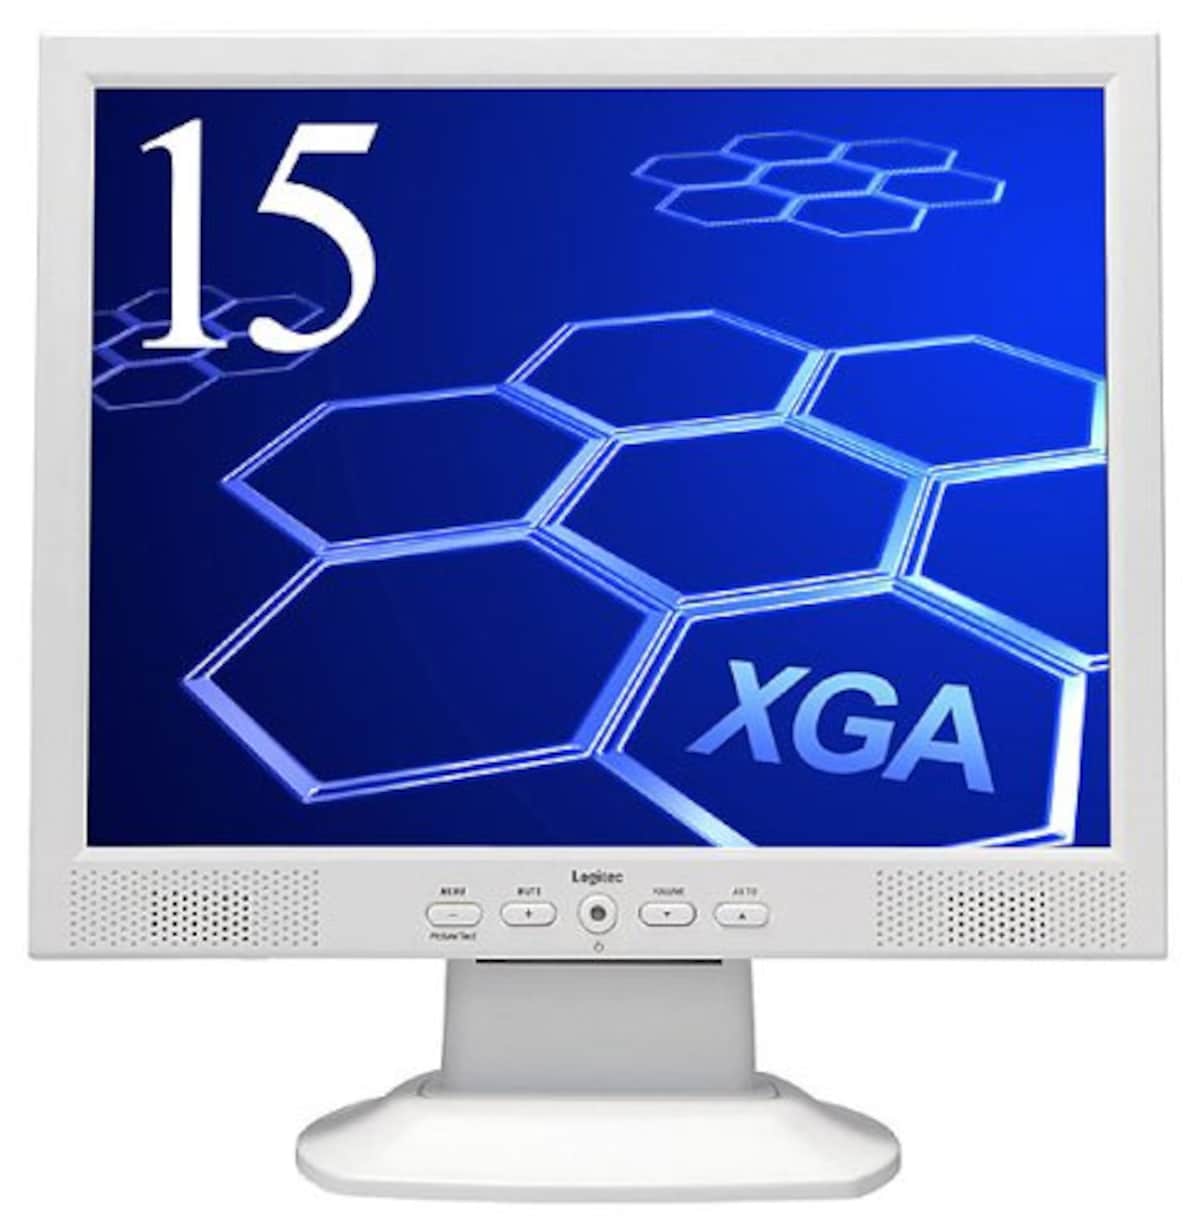 Logitec XGA対応15型アナログ液晶モニタ LCM-T159A/S